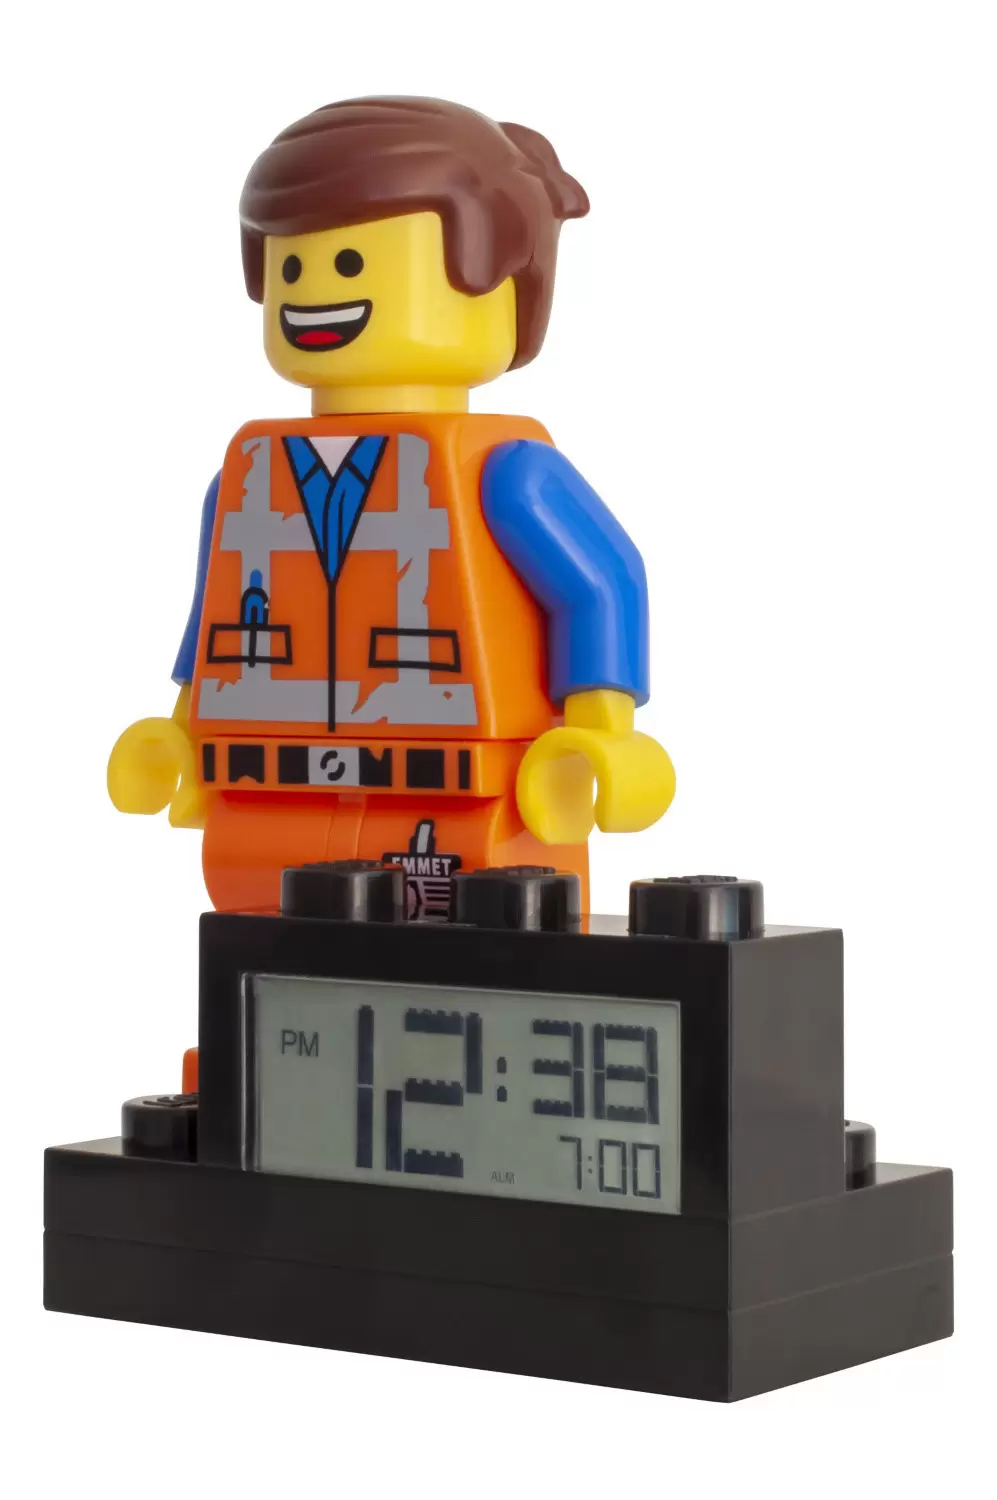 Réveil Lego Movie 2 Wyldstyle - Écran LCD numérique rétroéclairé - Fonction  réveil et répétition - Environ 24 cm